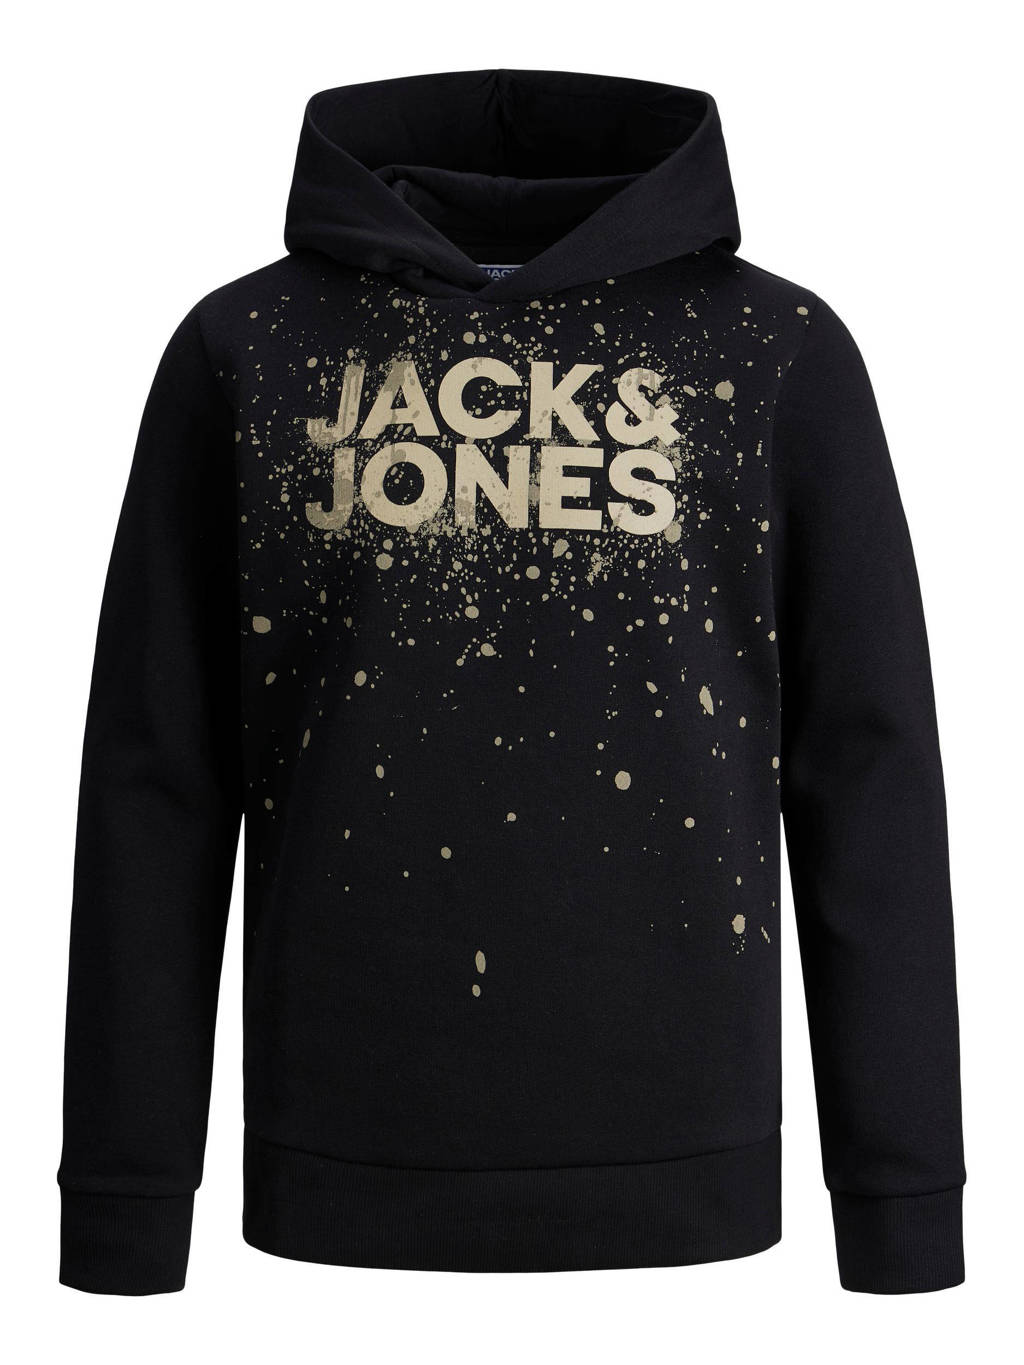 Zwarte jongens JACK & JONES JUNIOR hoodie van sweat materiaal met logo dessin, lange mouwen en capuchon